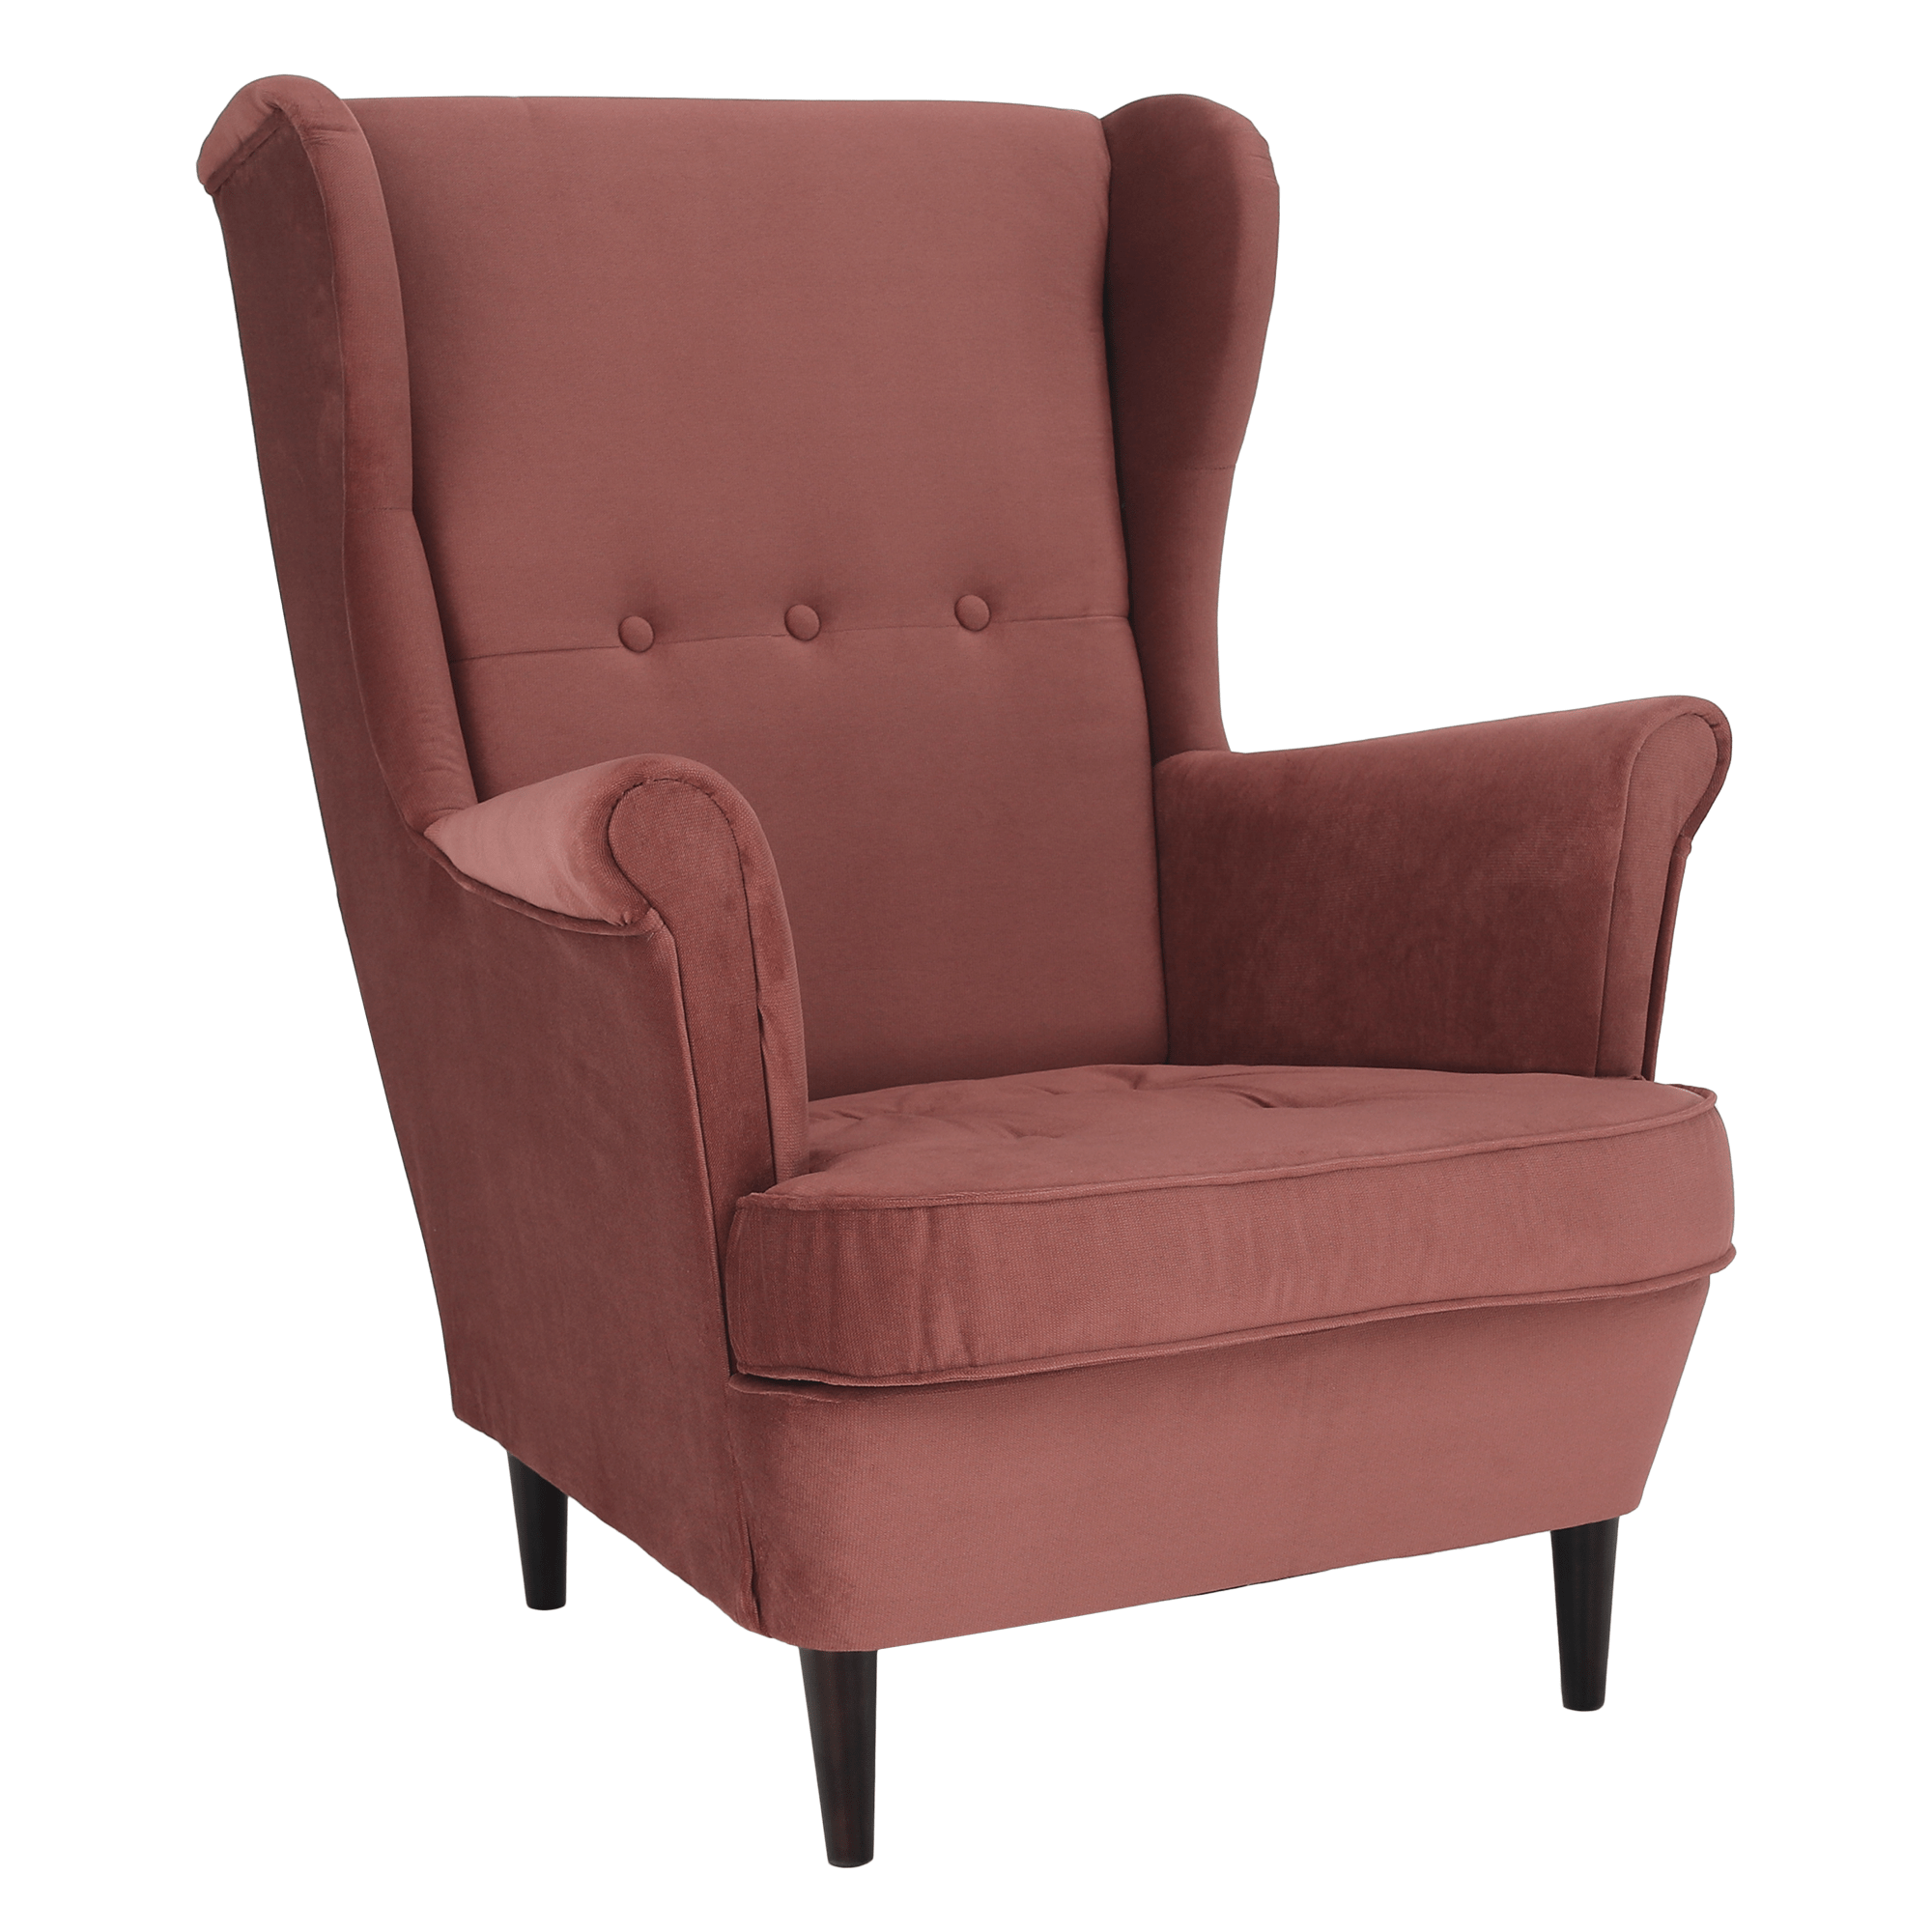 Füles fotel, vén rózsaszín/dió, RUFINO 3 NEW